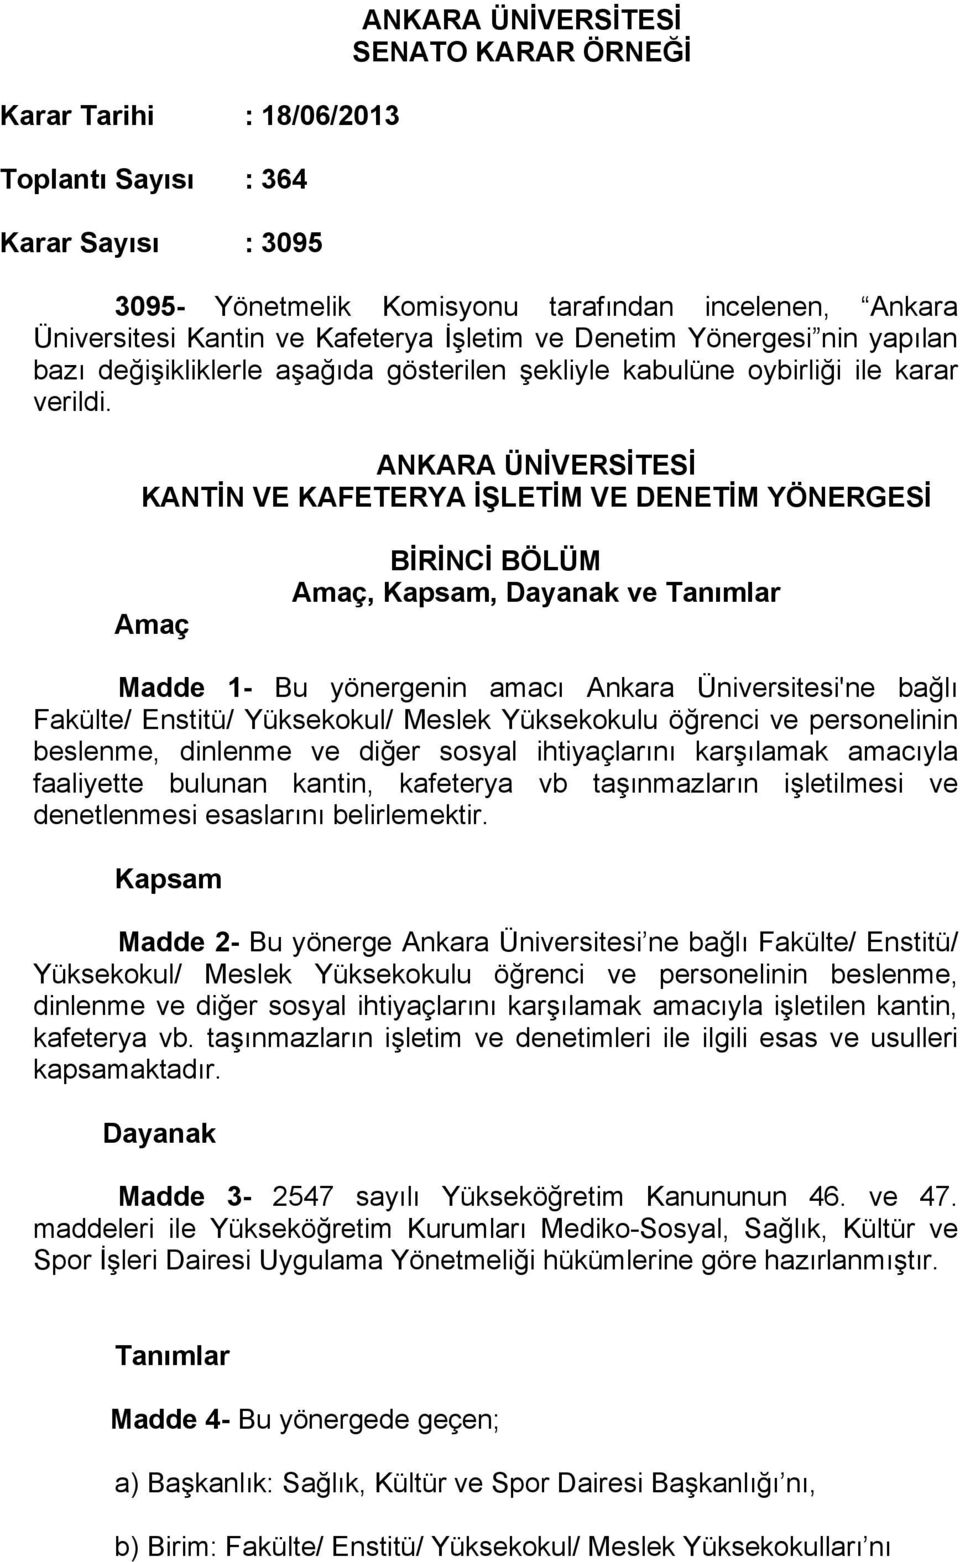 ANKARA ÜNİVERSİTESİ KANTİN VE KAFETERYA İŞLETİM VE DENETİM YÖNERGESİ Amaç BİRİNCİ BÖLÜM Amaç, Kapsam, Dayanak ve Tanımlar Madde 1- Bu yönergenin amacı Ankara Üniversitesi'ne bağlı Fakülte/ Enstitü/